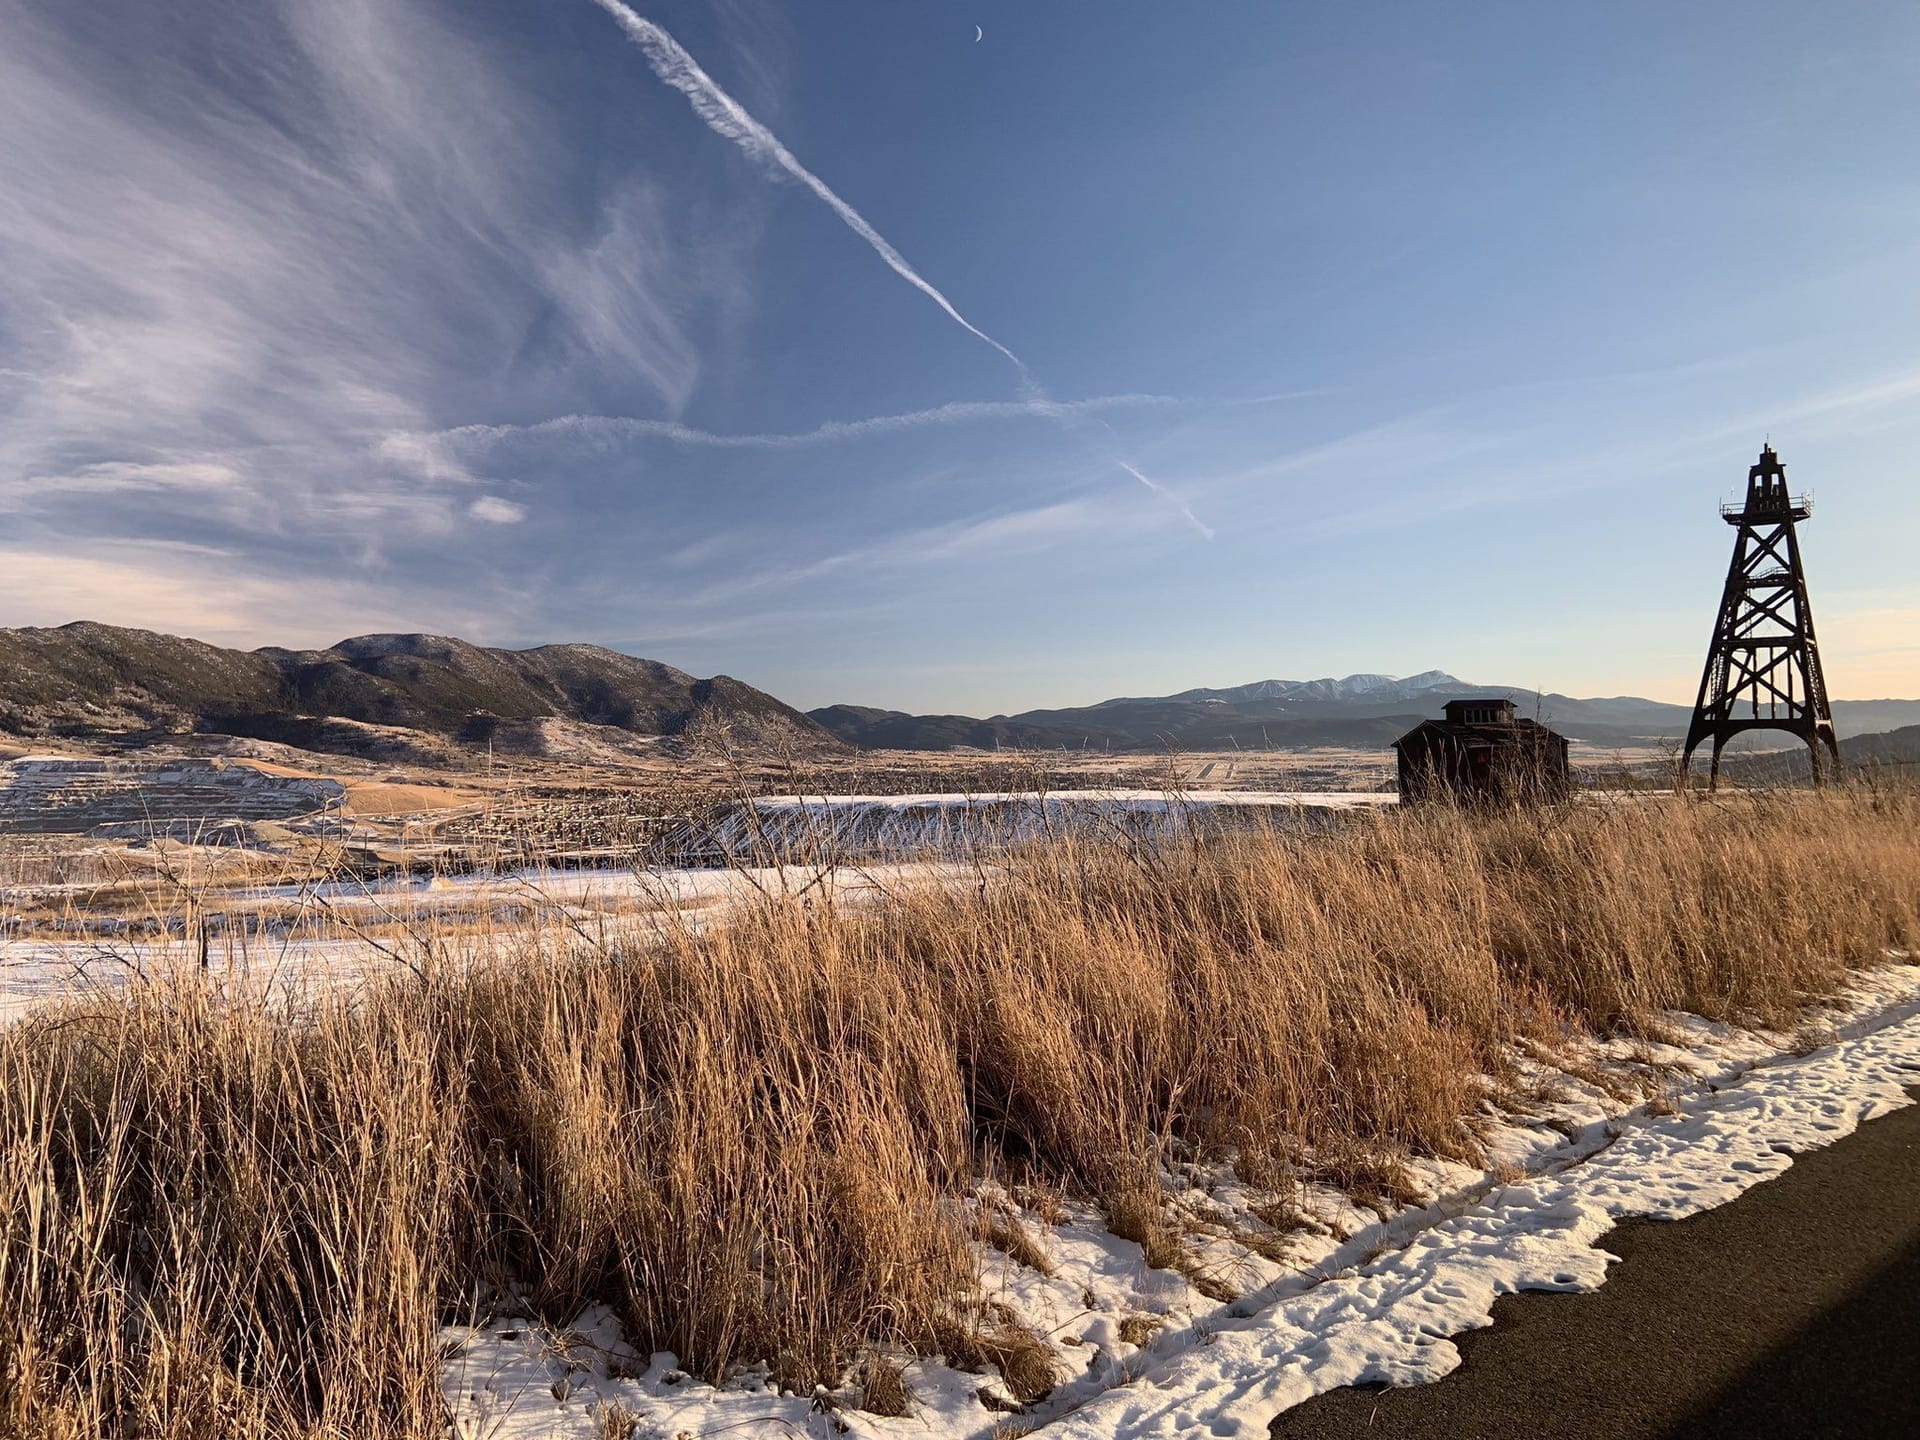 Hier könnte ein Bild vom feisten Donald stehen. Stattdessen zeige ich Ihnen lieber ein Bild vom feinen Montana, wo unser Korrespondent Bastian Brauns gerade die Natur genießt.